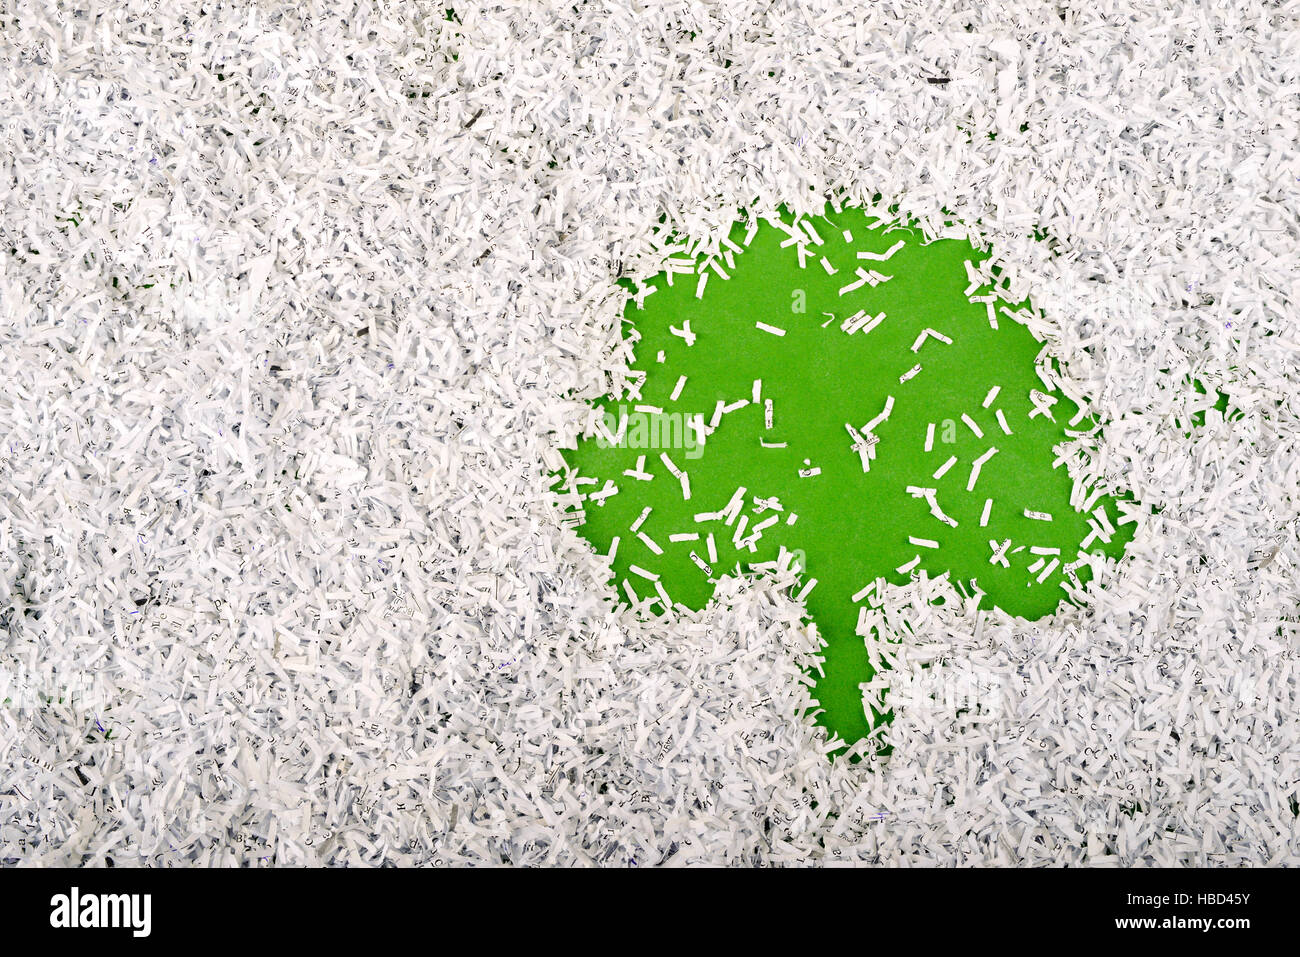 einfache grüne Baum-Symbol innerhalb grosser Haufen Papierschnitzel gemacht Stockfoto